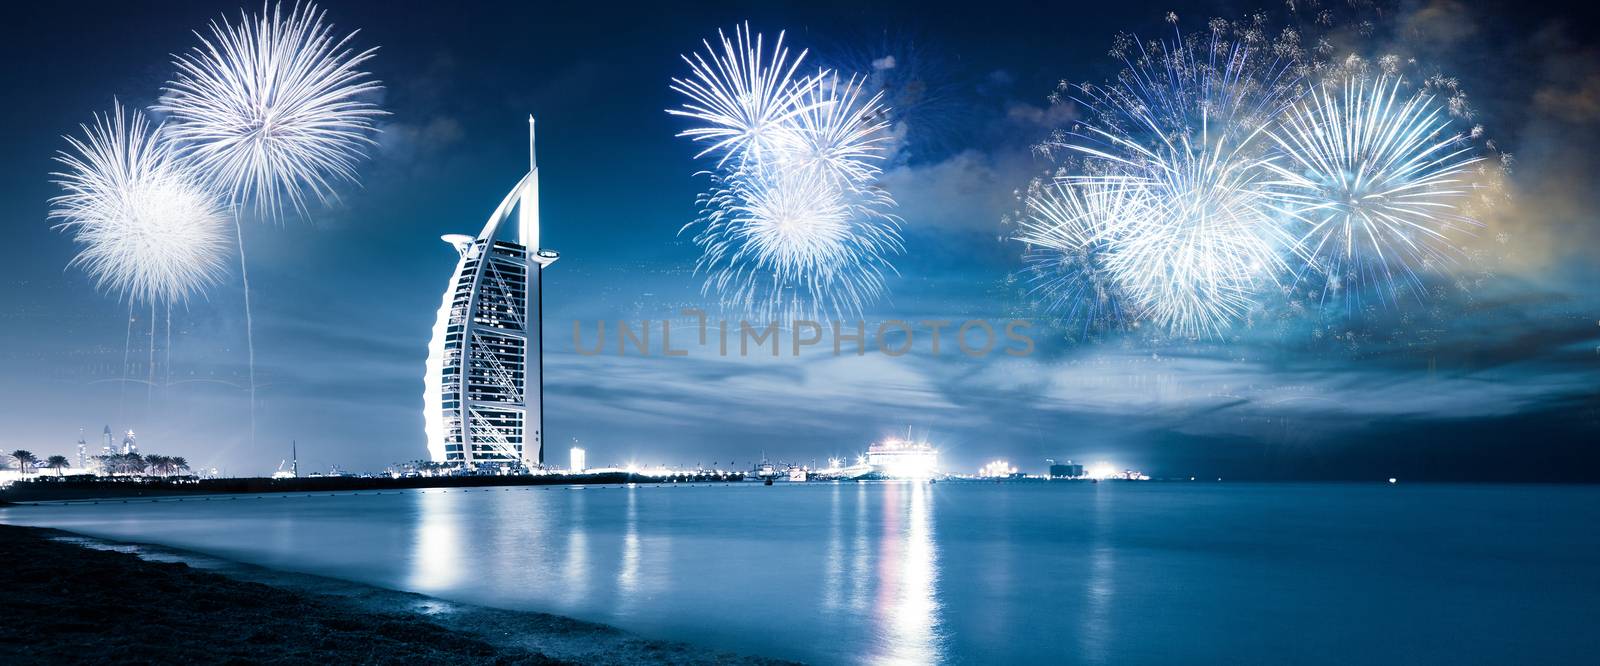 fireworks around Burj Al Arab - exotic New Year destination, Dub by melis